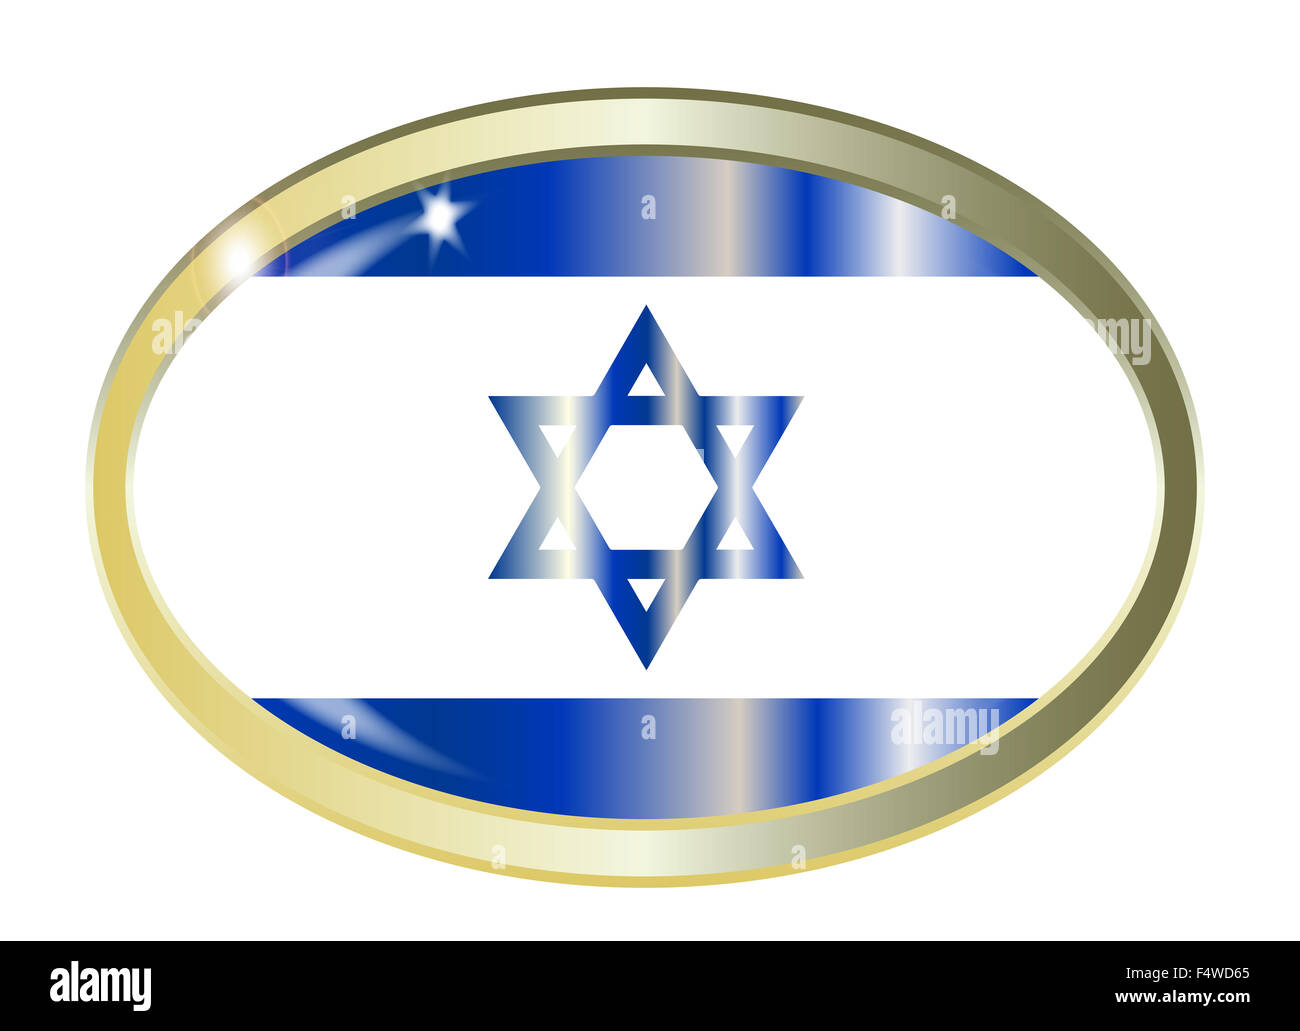 Bouton métal ovale avec le drapeau d'Israël isolé sur fond blanc Banque D'Images